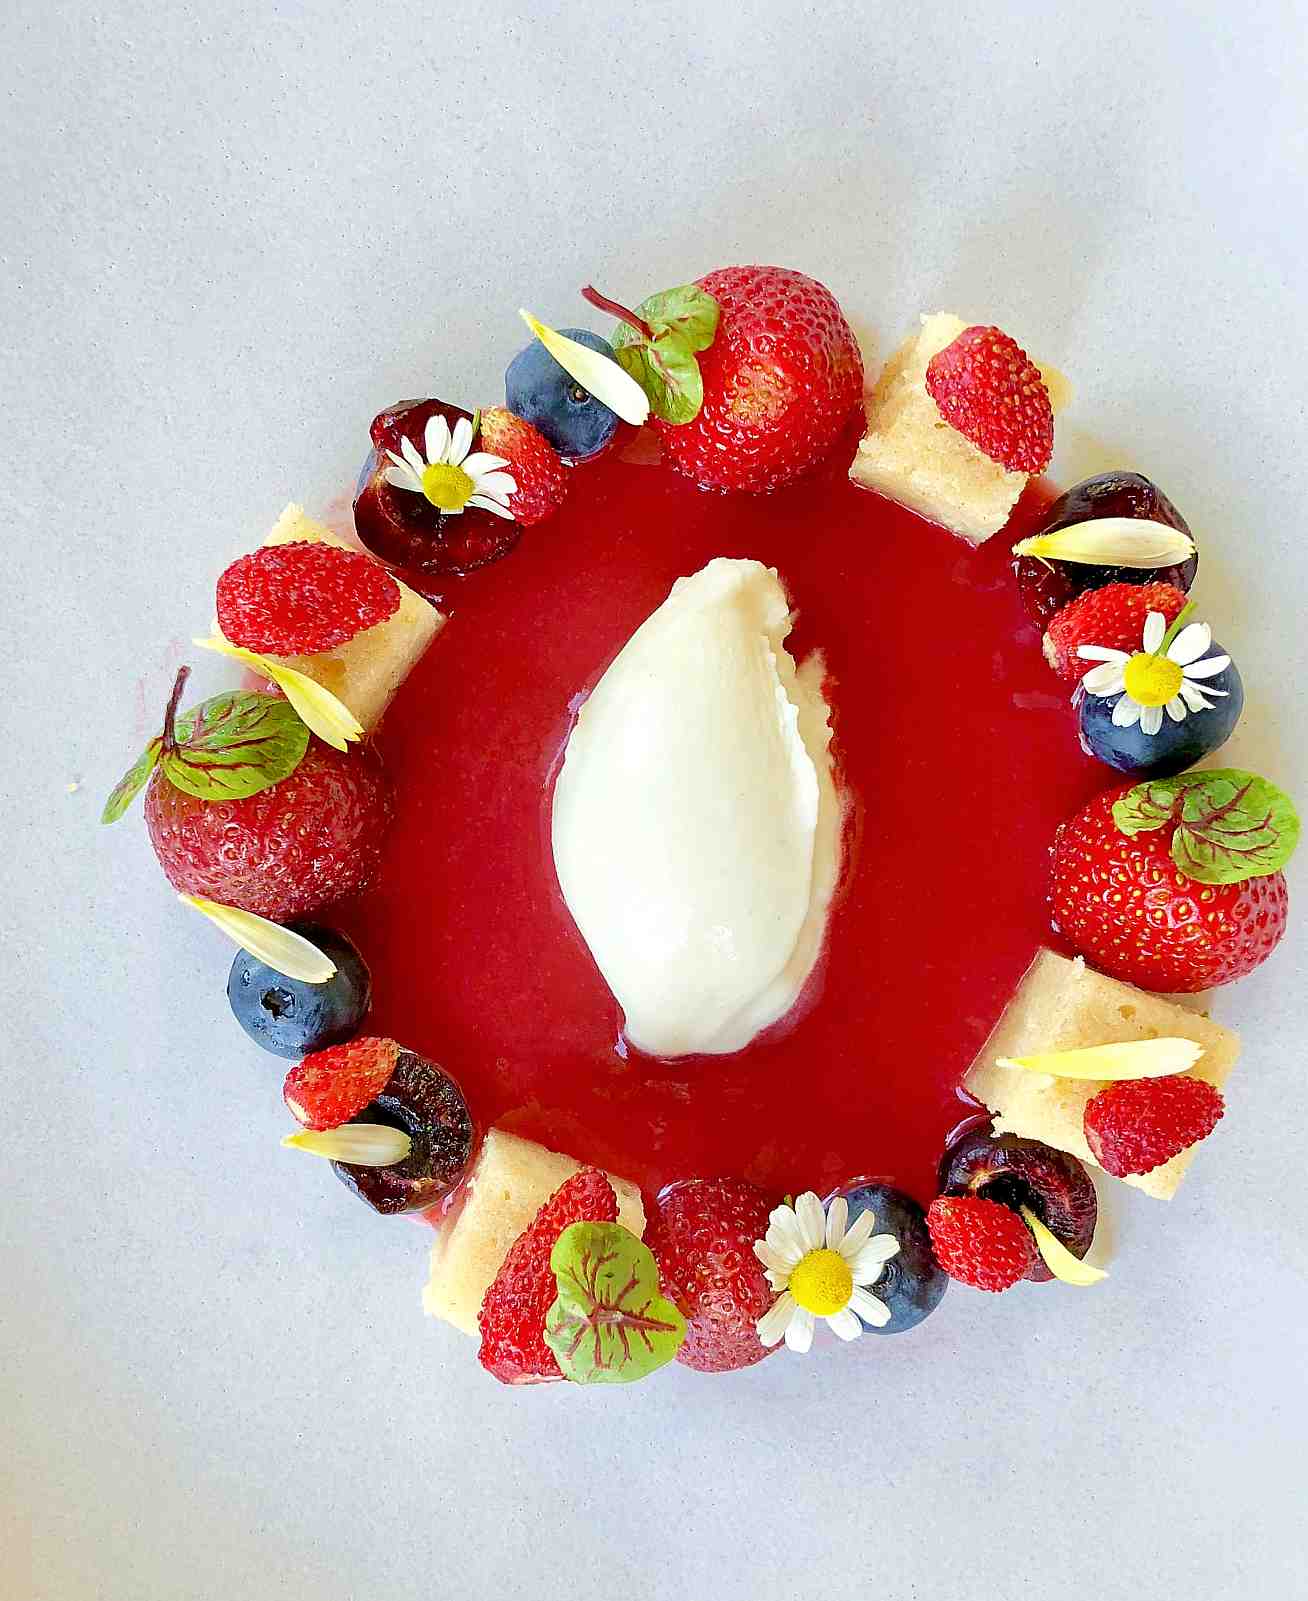 Honey cake with strawberries